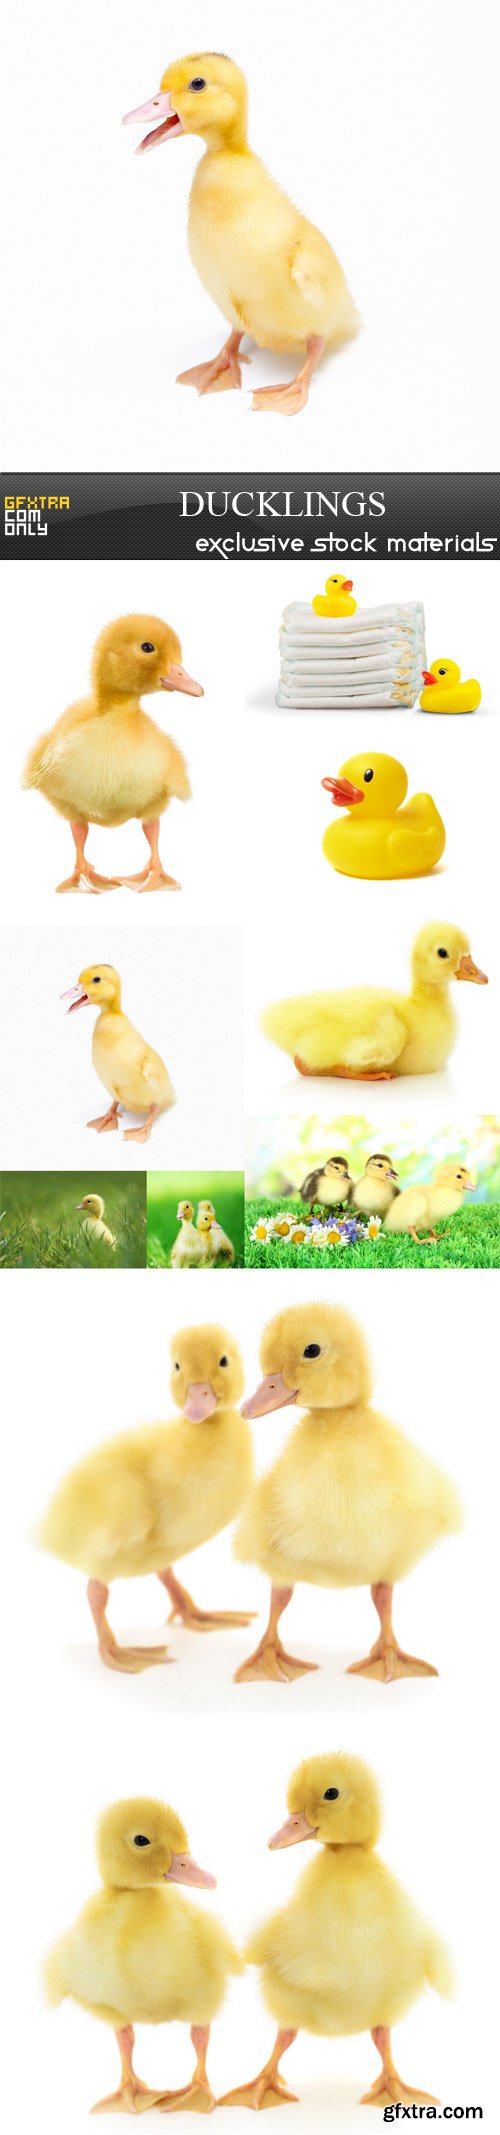 Ducklings, 10 UHQ JPEG